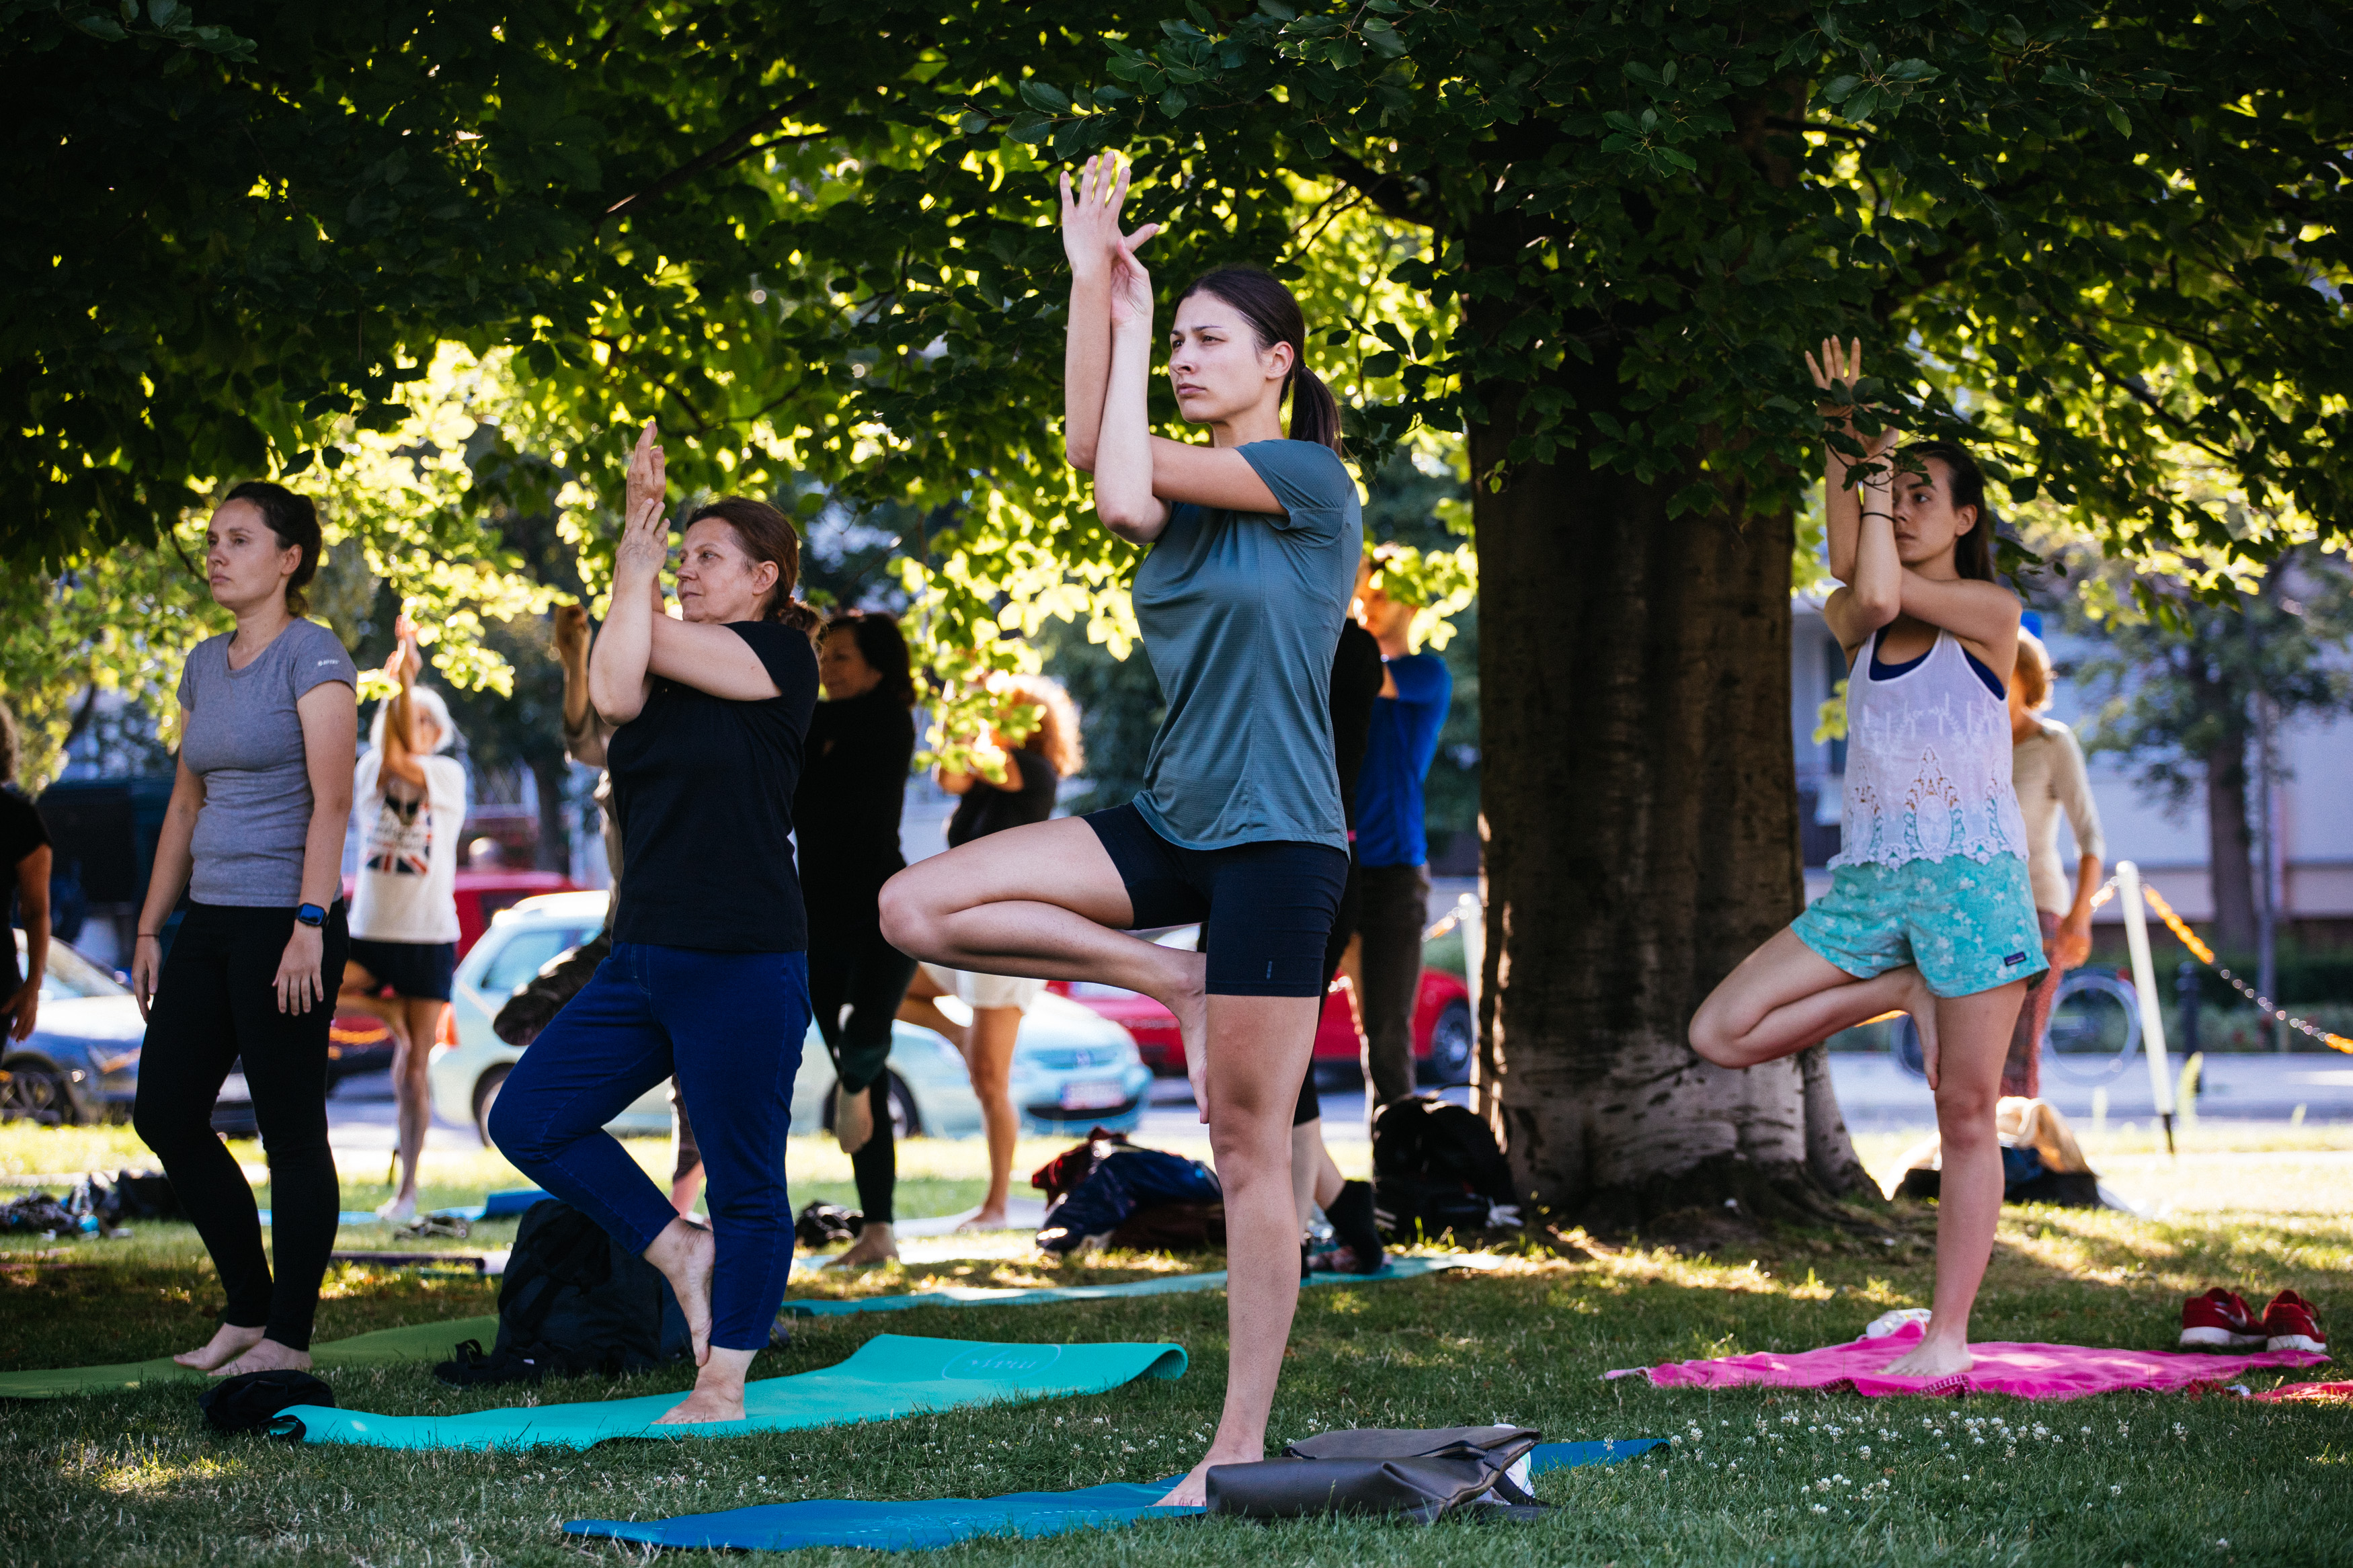 Na obrazie widzimy grupę osób ćwiczących jogę w parku. 